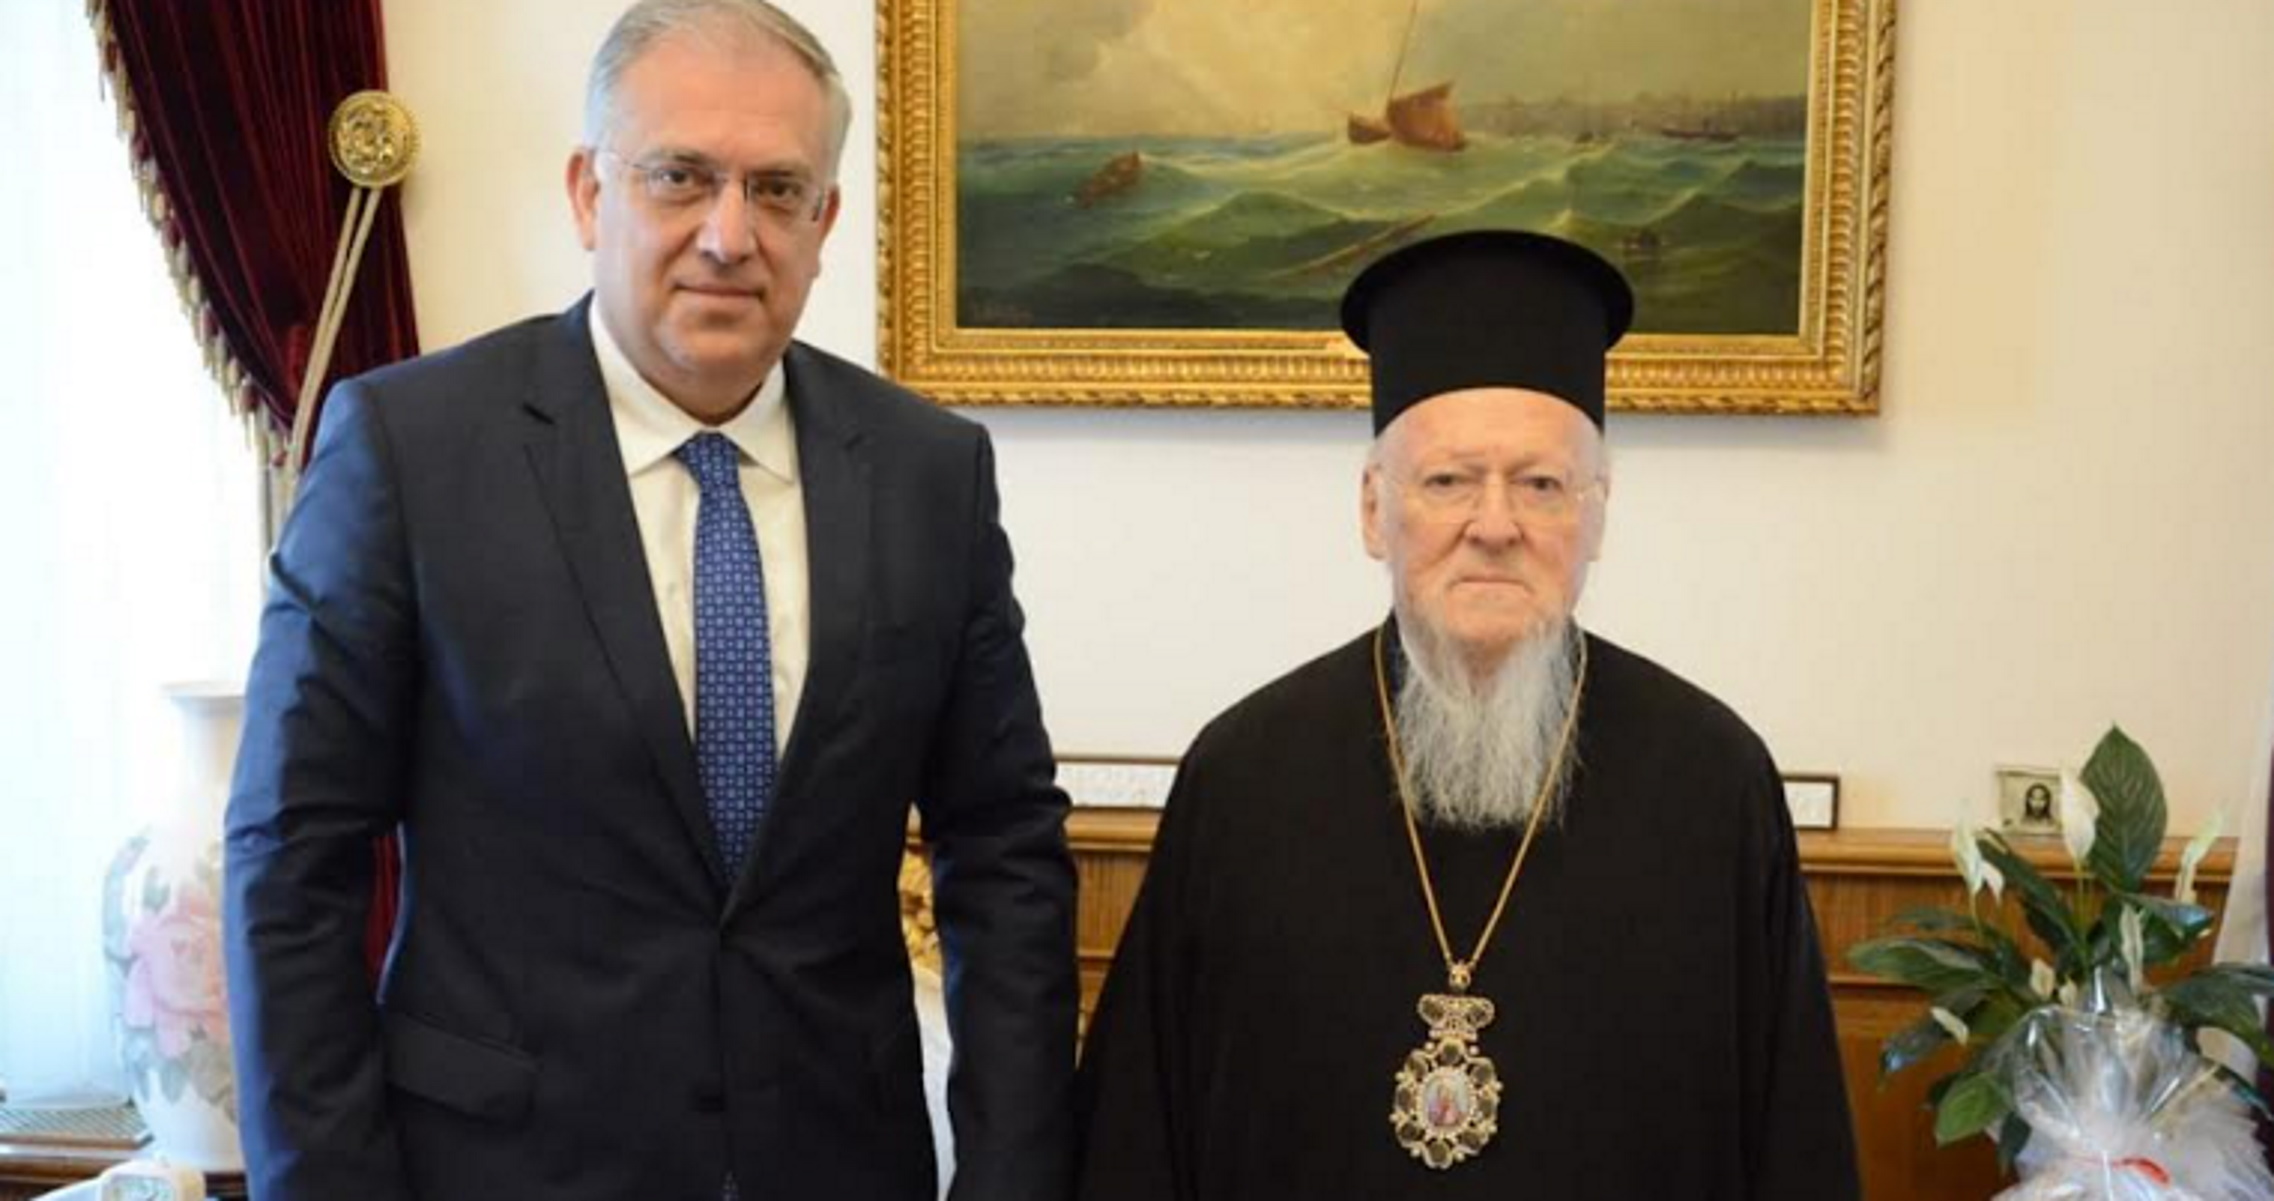 Τάκης Θεοδωρικάκος με Πατριάρχη Βαρθολομαίο στο Φανάρι: Φωτεινός φάρος ορθοδοξίας – Ανοιχτή πληγή η ρωσική εισβολή